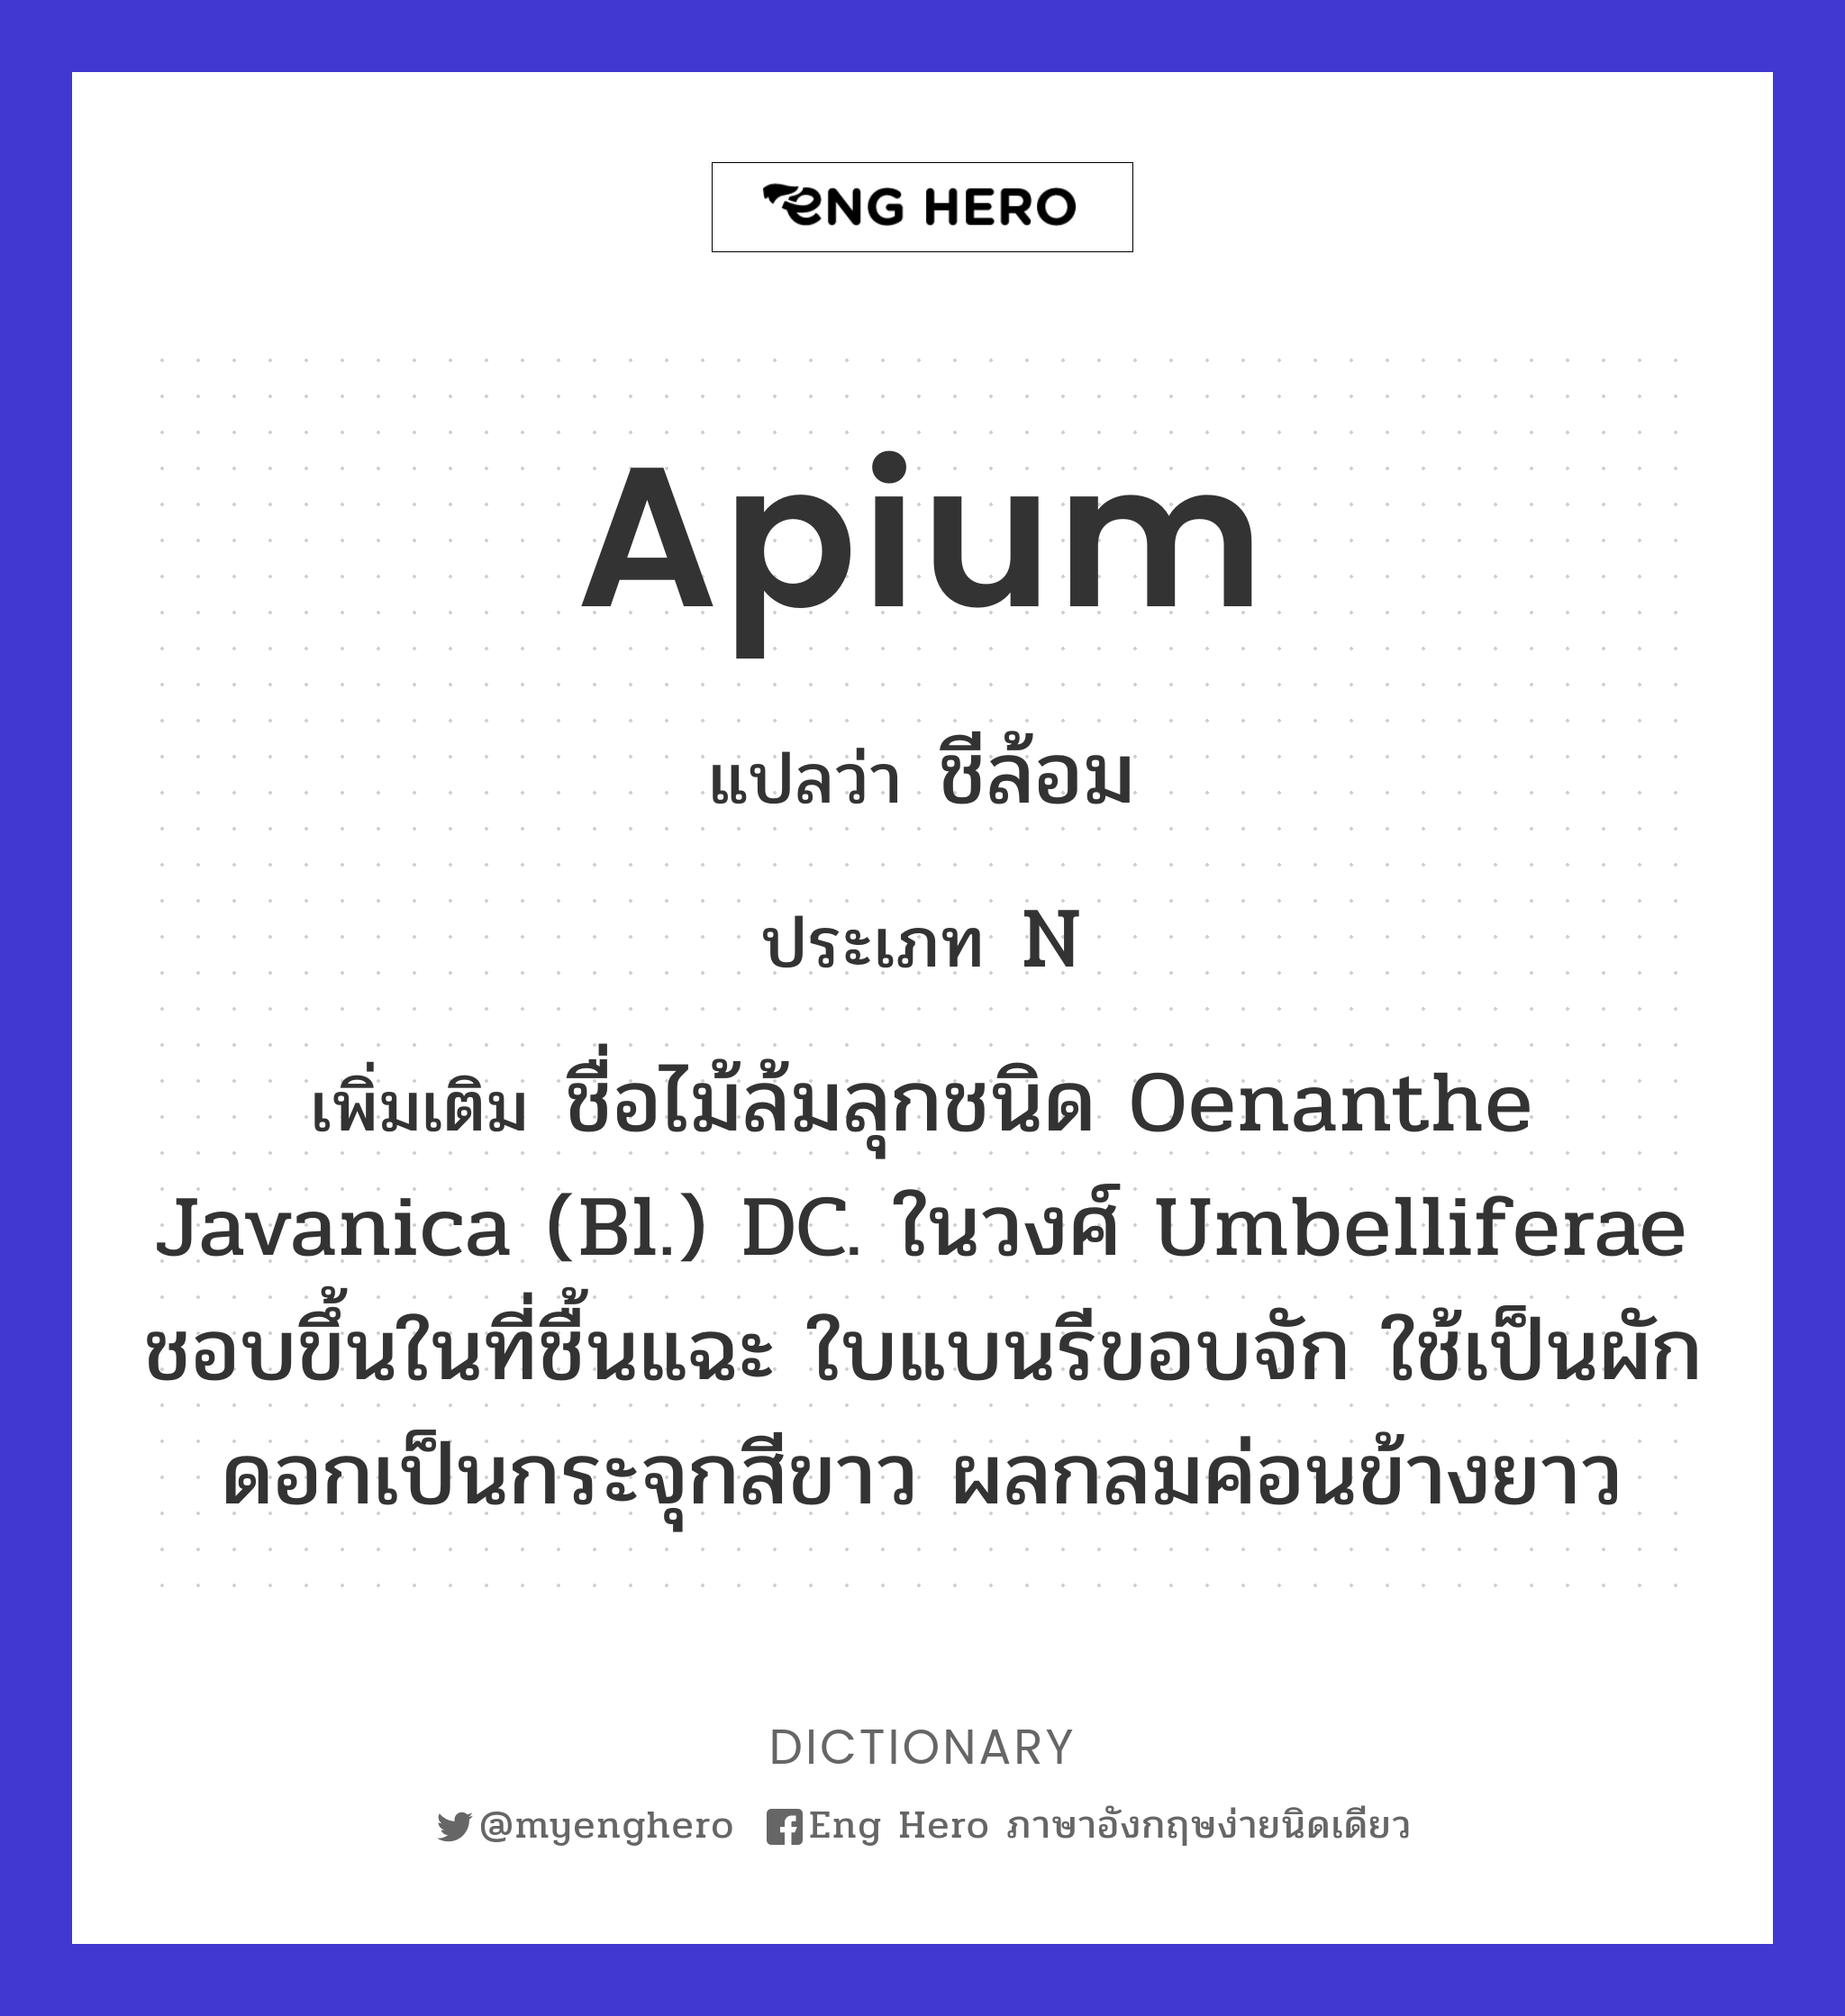 Apium